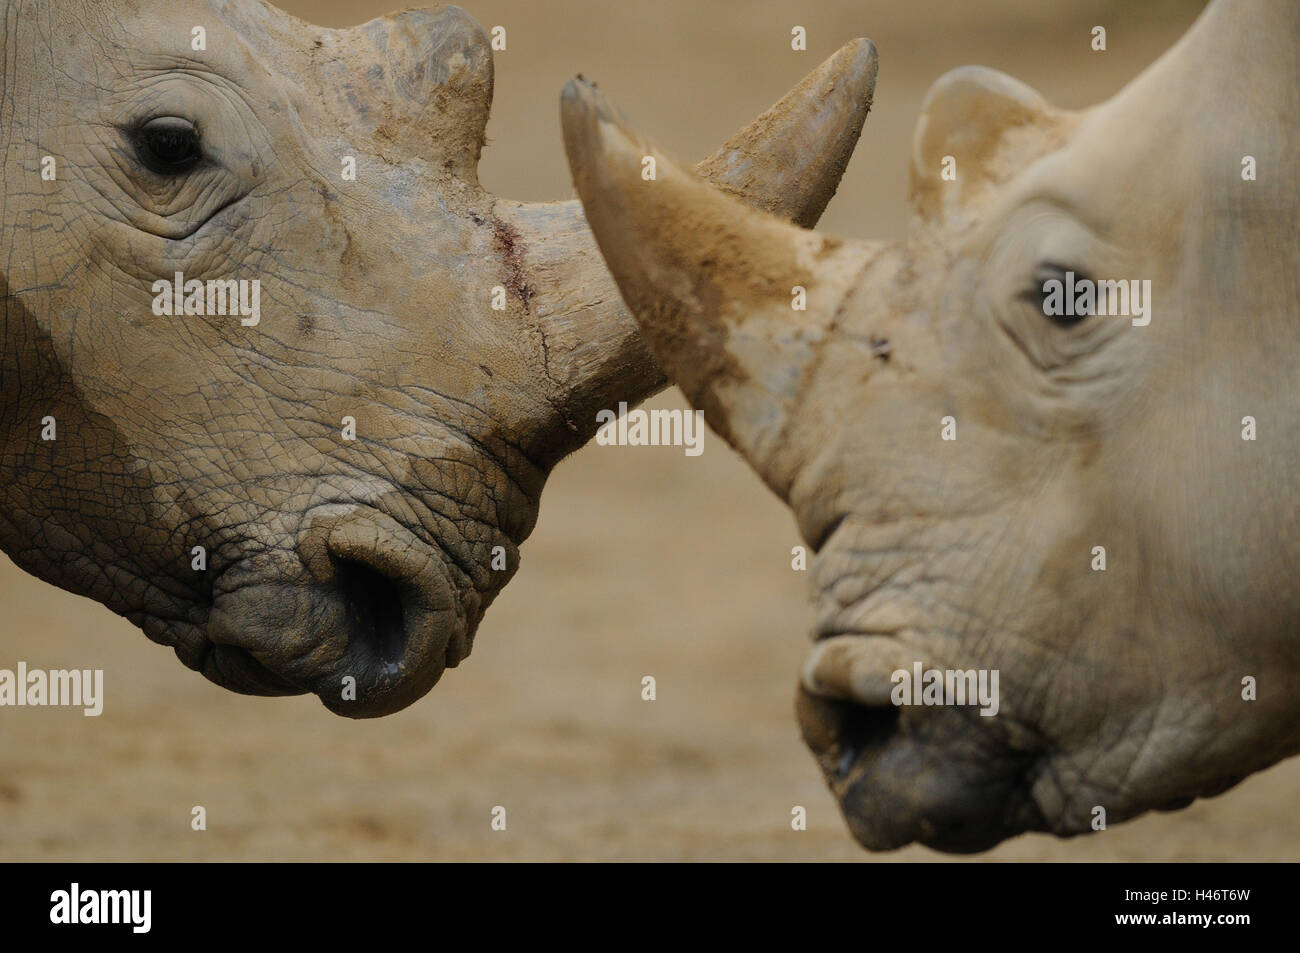 Wide mouth rhinoceroses, Ceratotherium simum simum, portrait, side view, Stock Photo